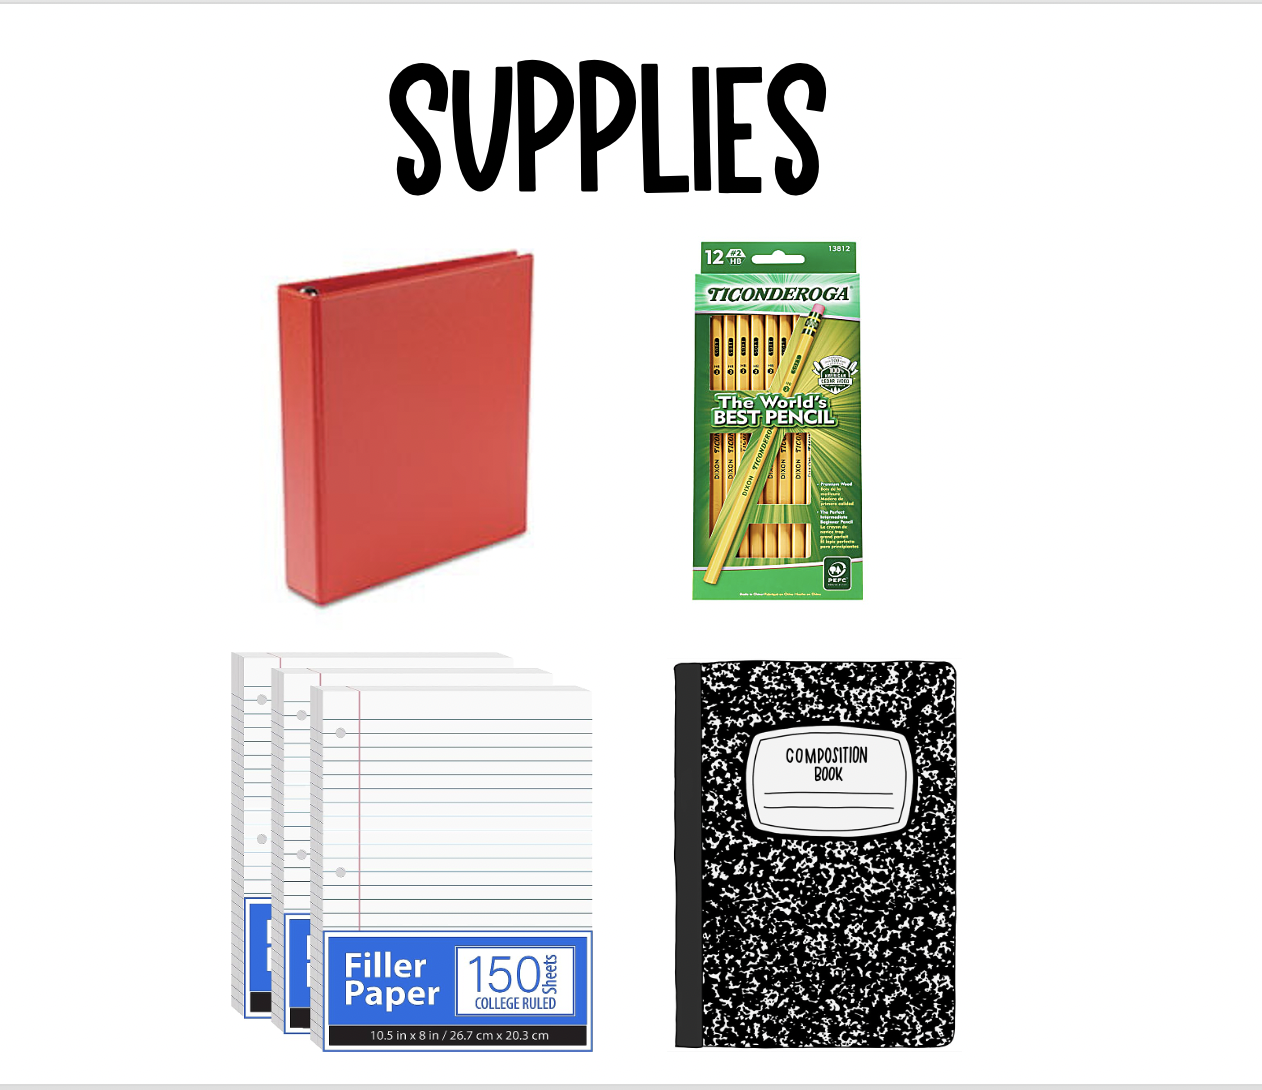 supplies